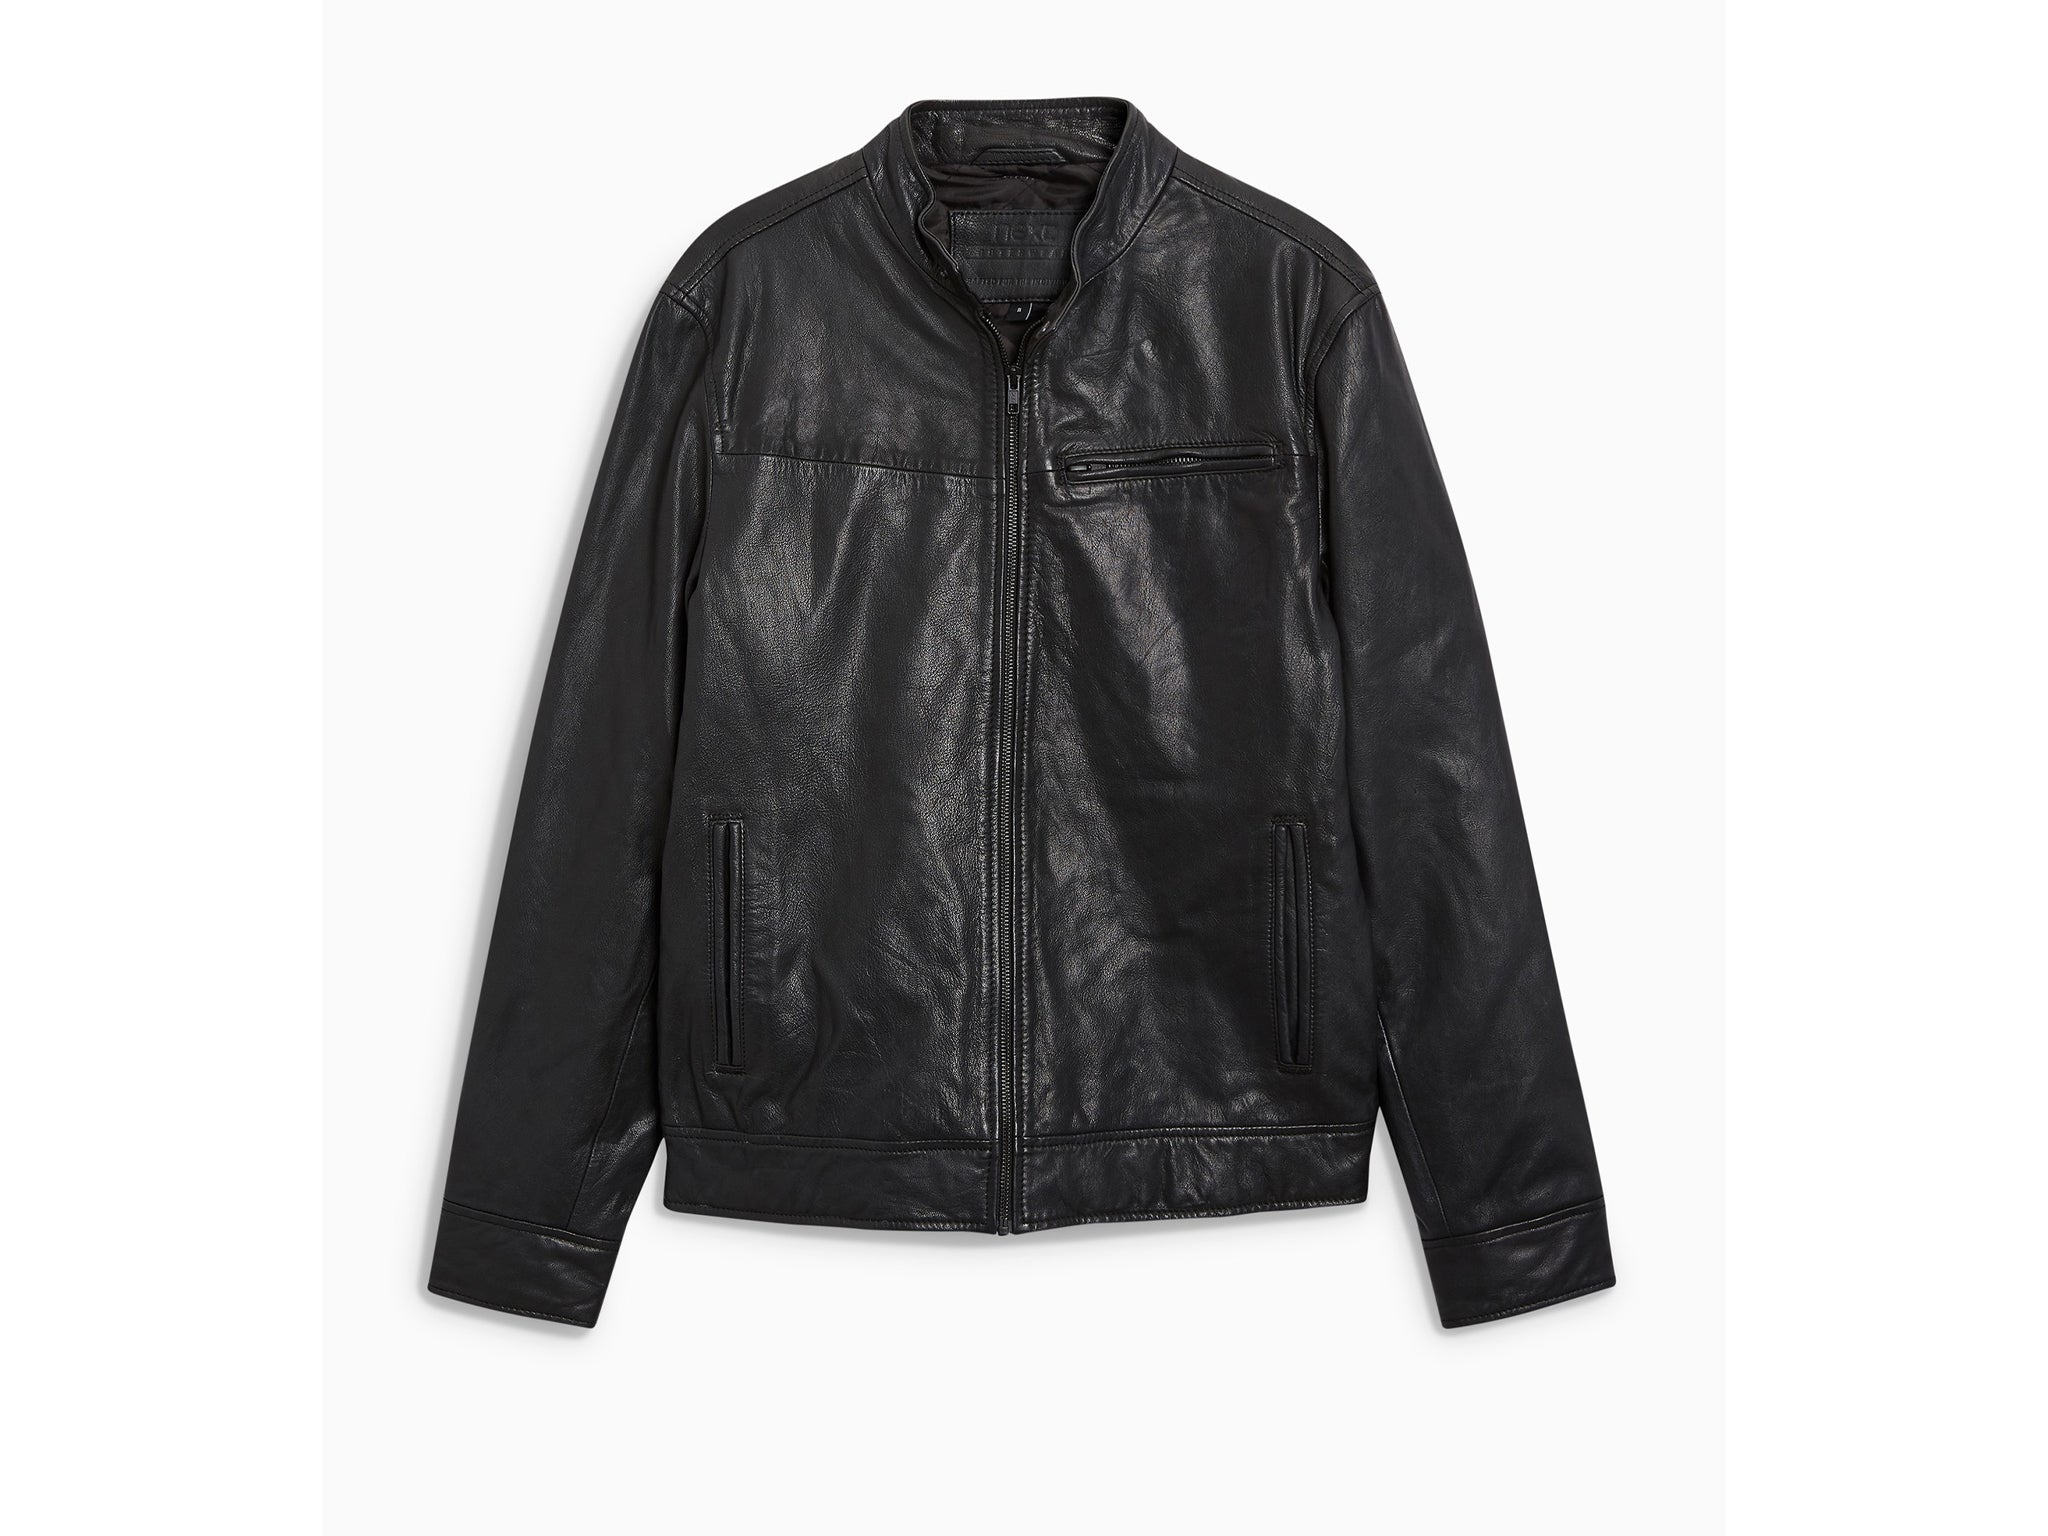 Best & Stylish Leather Jacket For Men, 2020 Leather Jacket Design